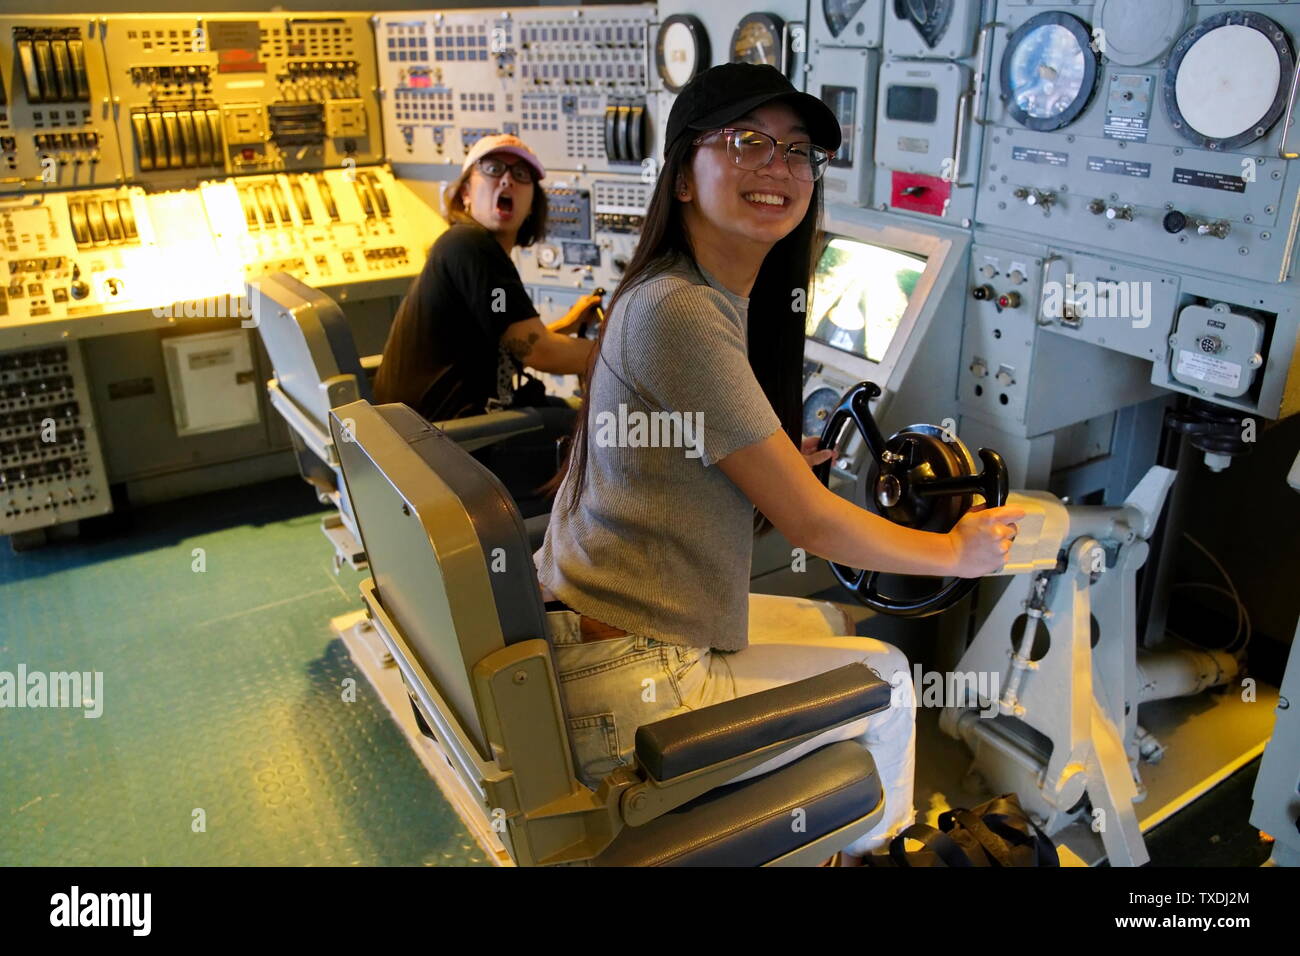 Le Musée de la force sous-marine de Groton, CT USA, juin 2019. Les jeunes femmes asiatiques Américains profitant de la station de contrôle d'un sous-marin américain. Banque D'Images